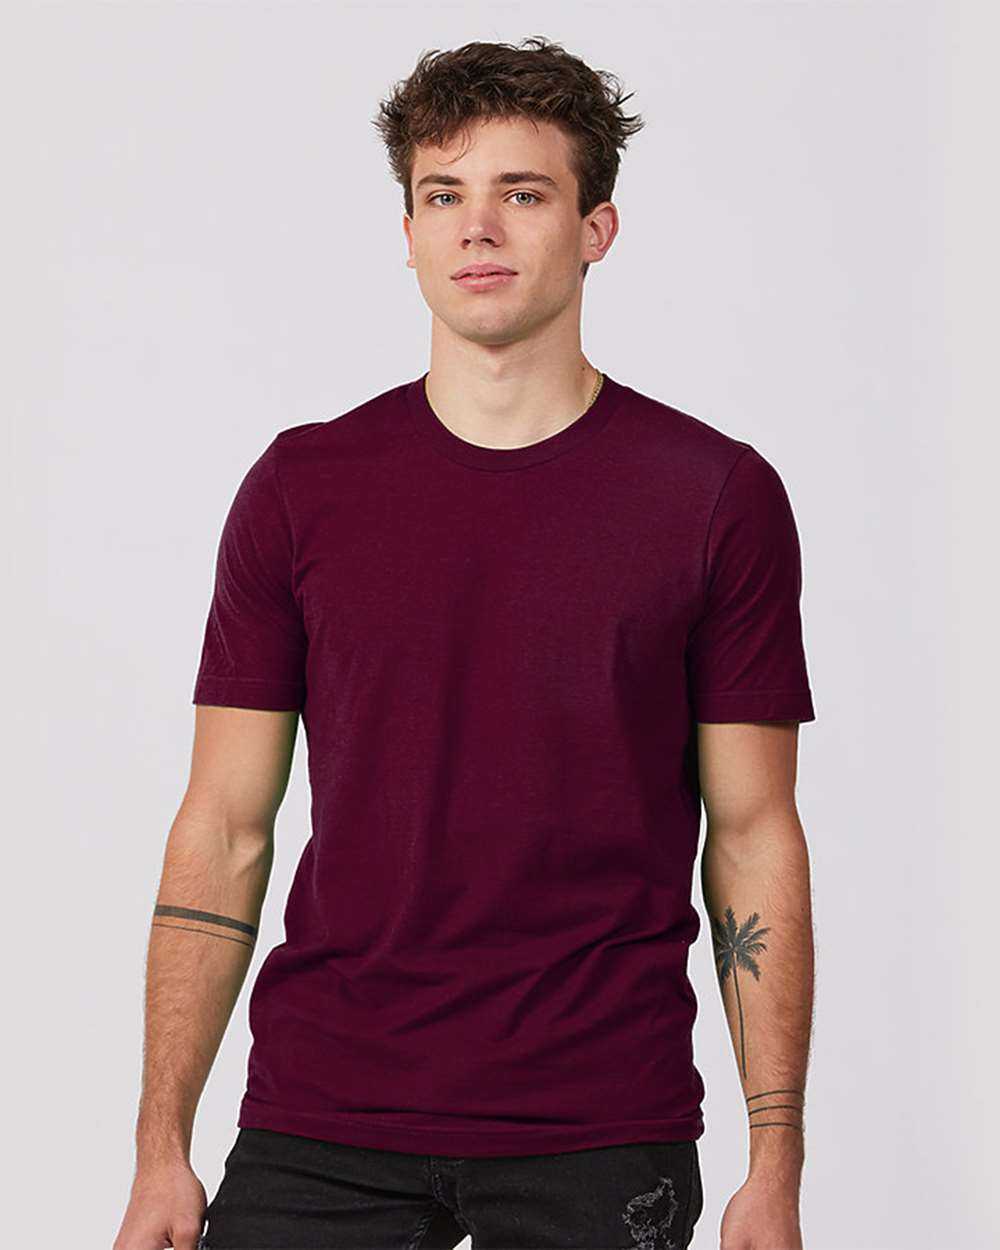 Tultex 502 Premium Cotton T-Shirt - Burgundy - HIT a Double